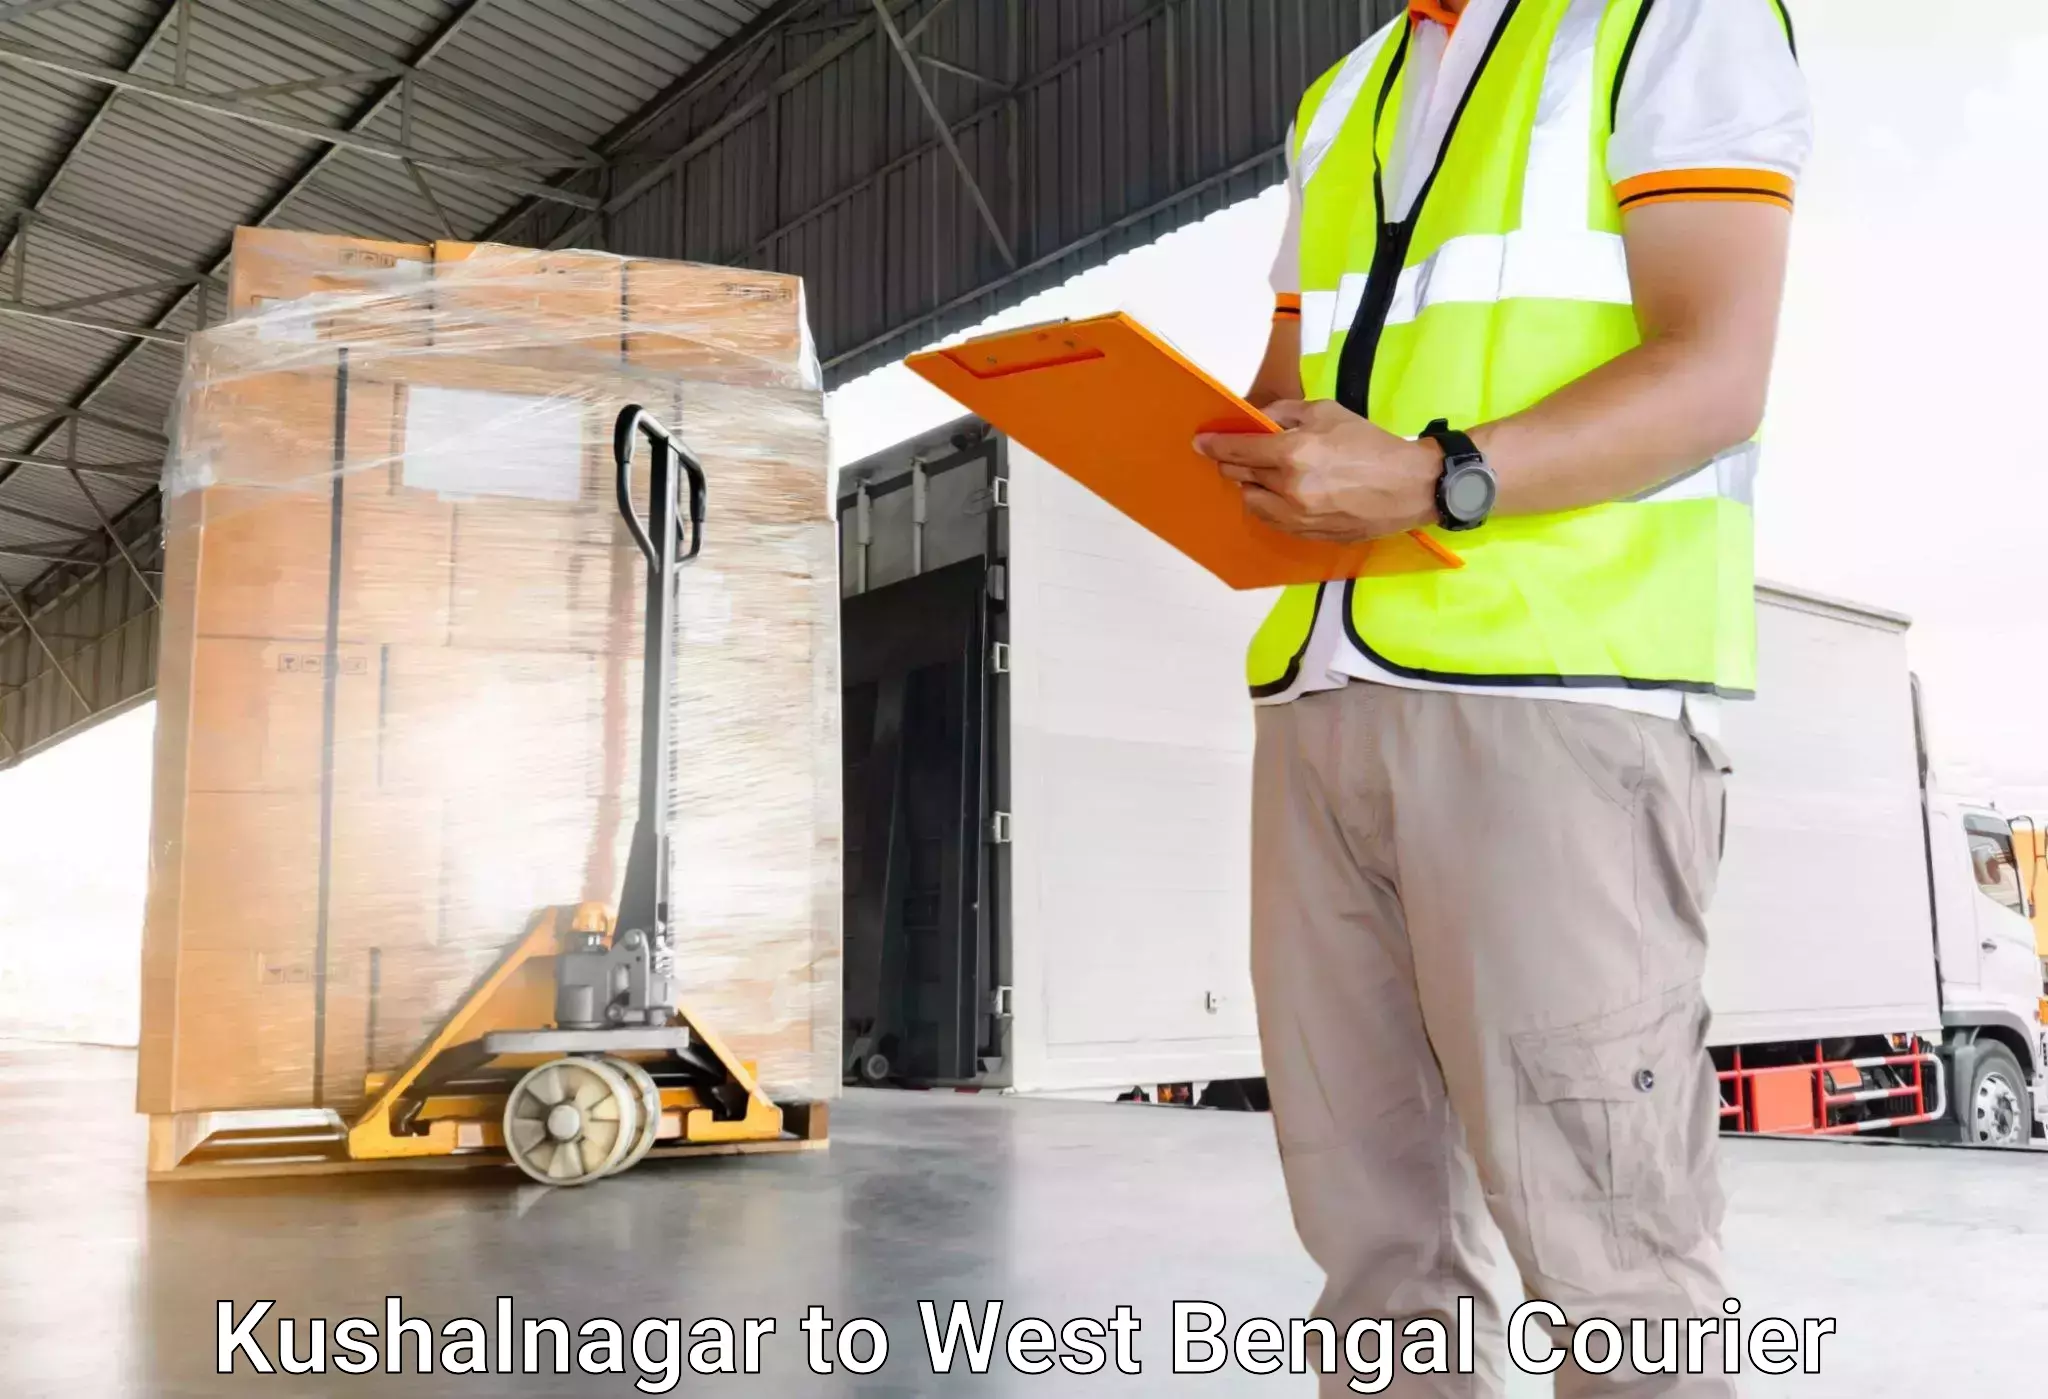 Baggage transport professionals Kushalnagar to Kalyani